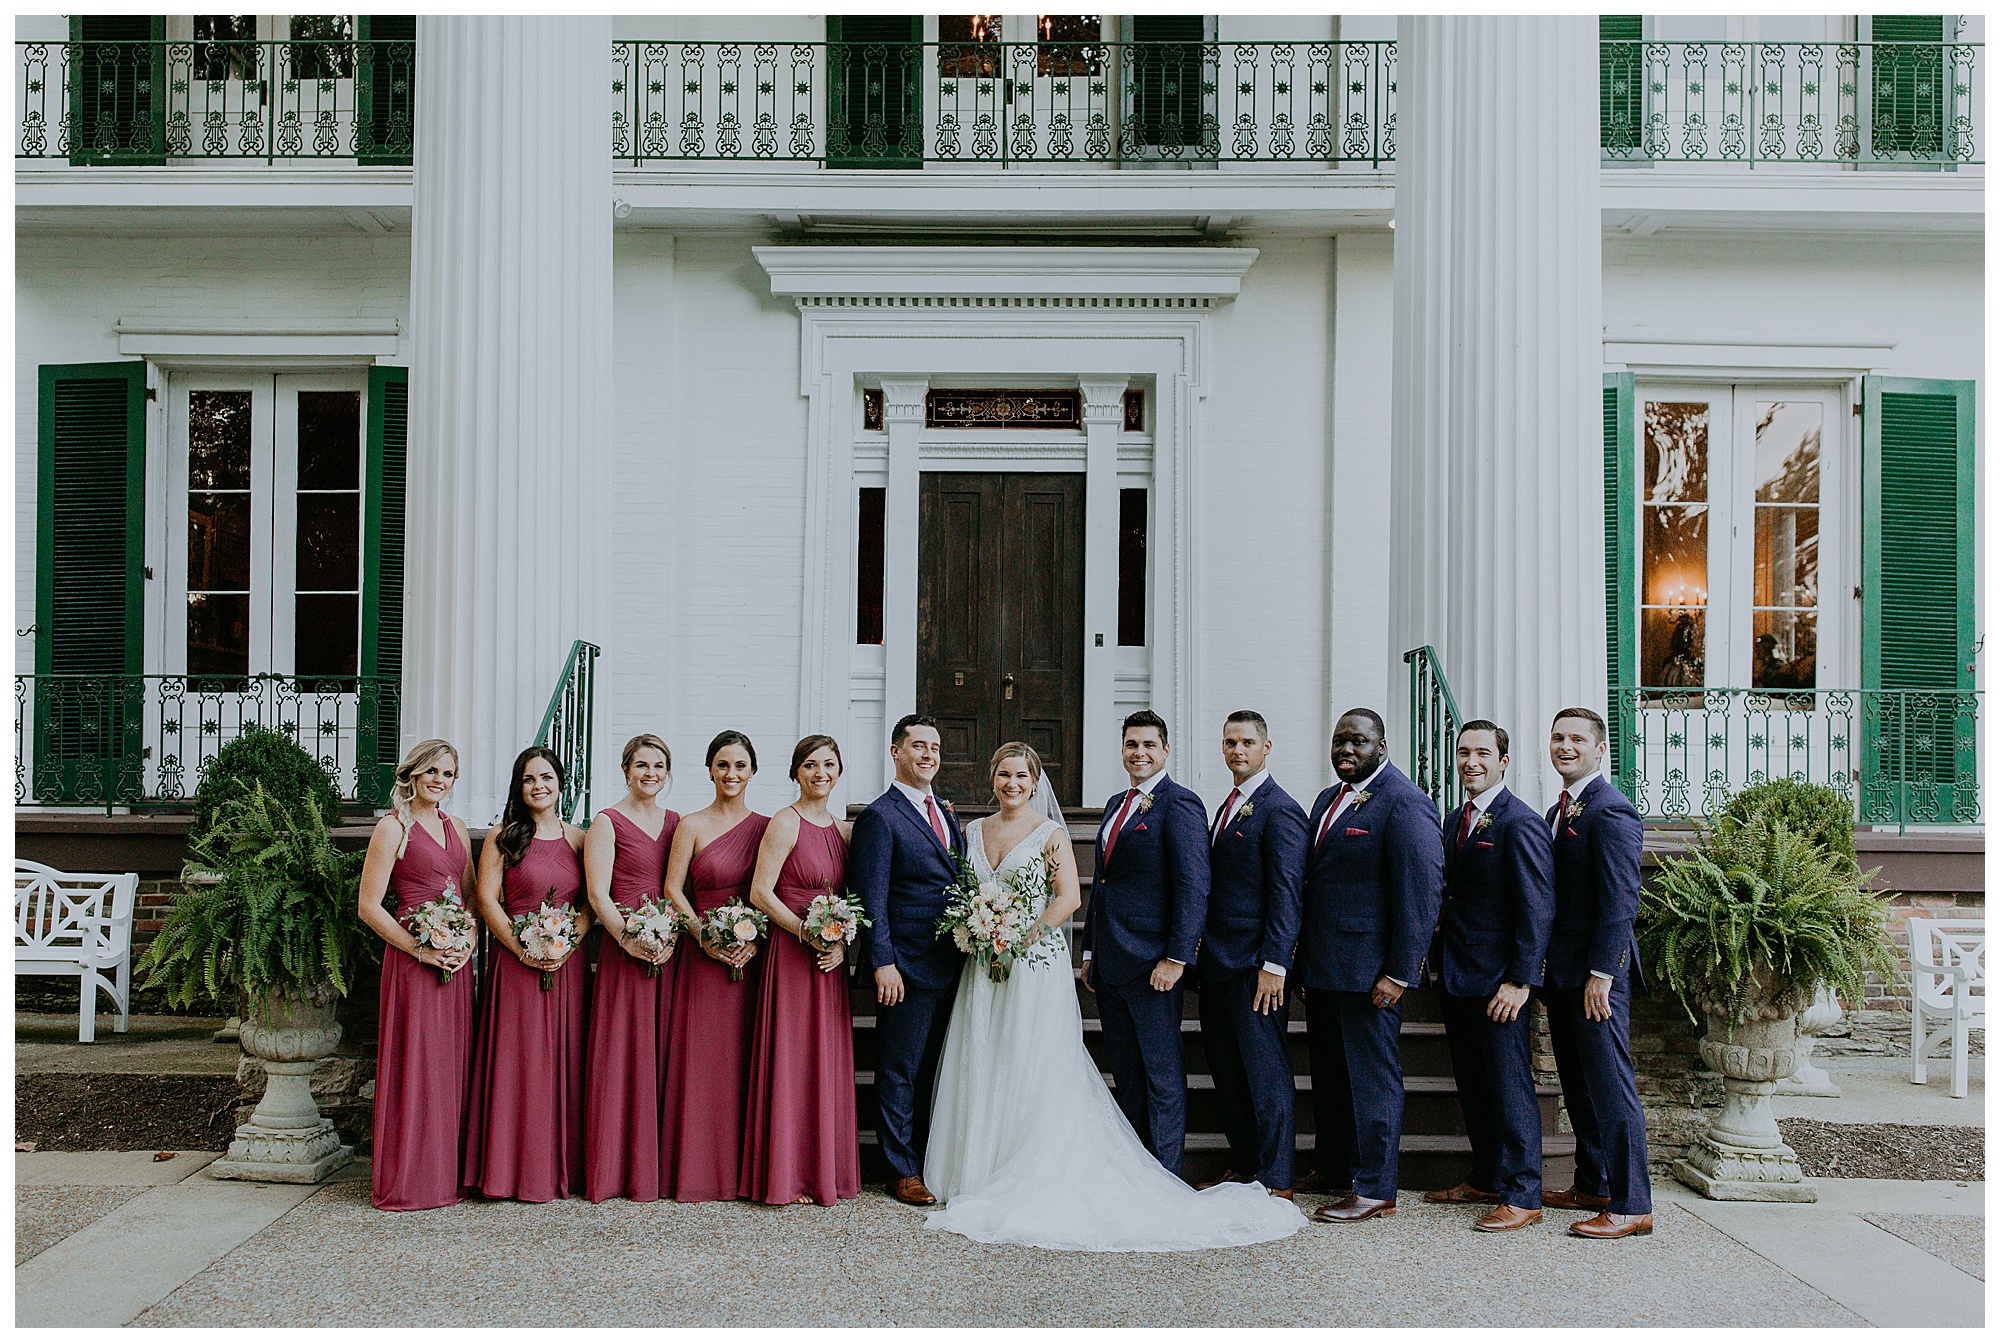 Nashville Wedding Photographer, Nashville wedding photography, Nashville Tennessee, Nashville Wedding venue, Riverwood Mansion, best Nashville wedding venues, bridal party